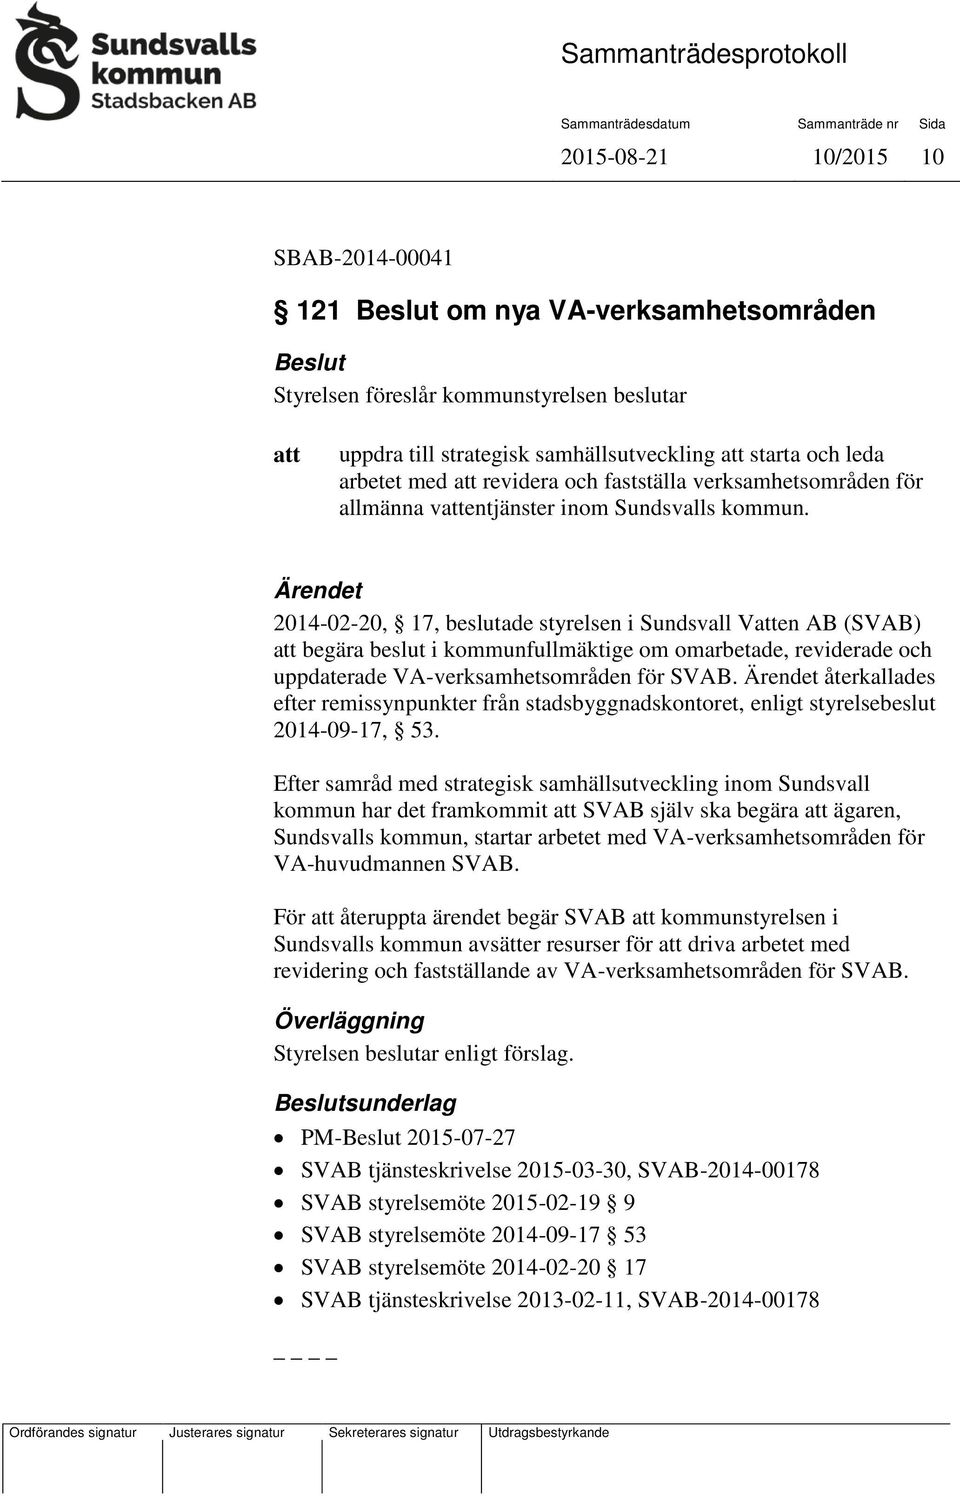 Ärendet 2014-02-20, 17, beslutade styrelsen i Sundsvall Ven AB (SVAB) begära beslut i kommunfullmäktige om omarbetade, reviderade och uppdaterade VA-verksamhetsområden för SVAB.